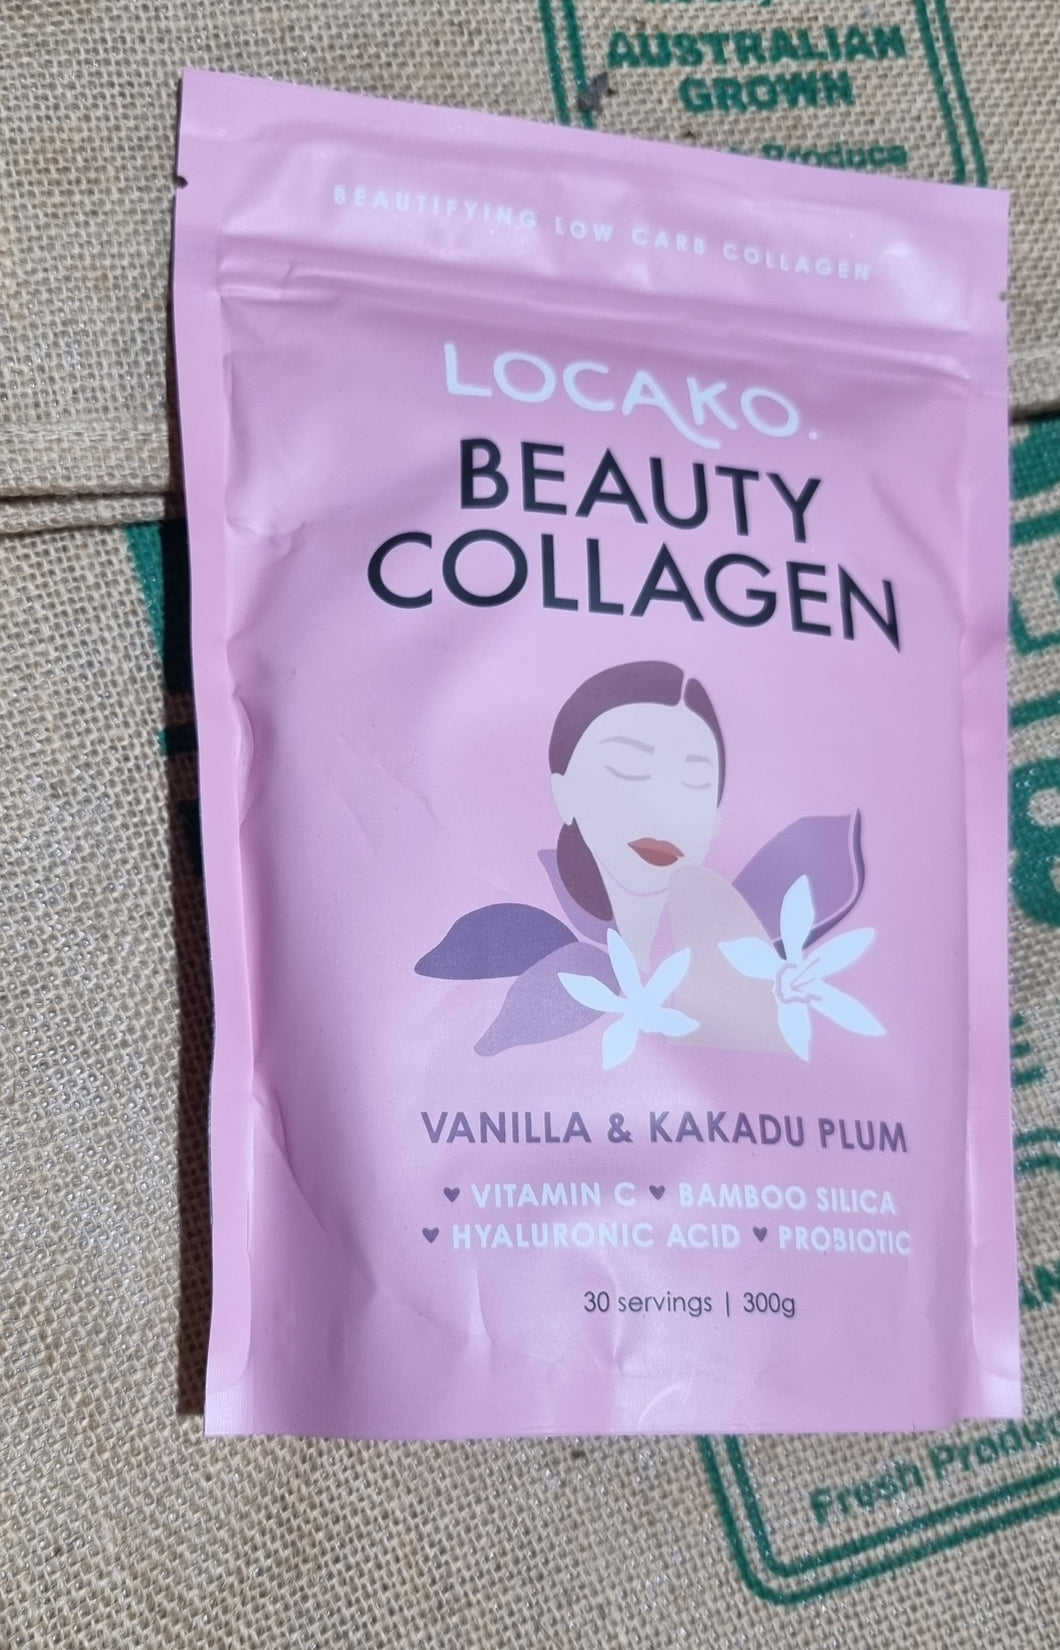 COLLAGEN- Locako Beauty Vanilla and Kakadu plum